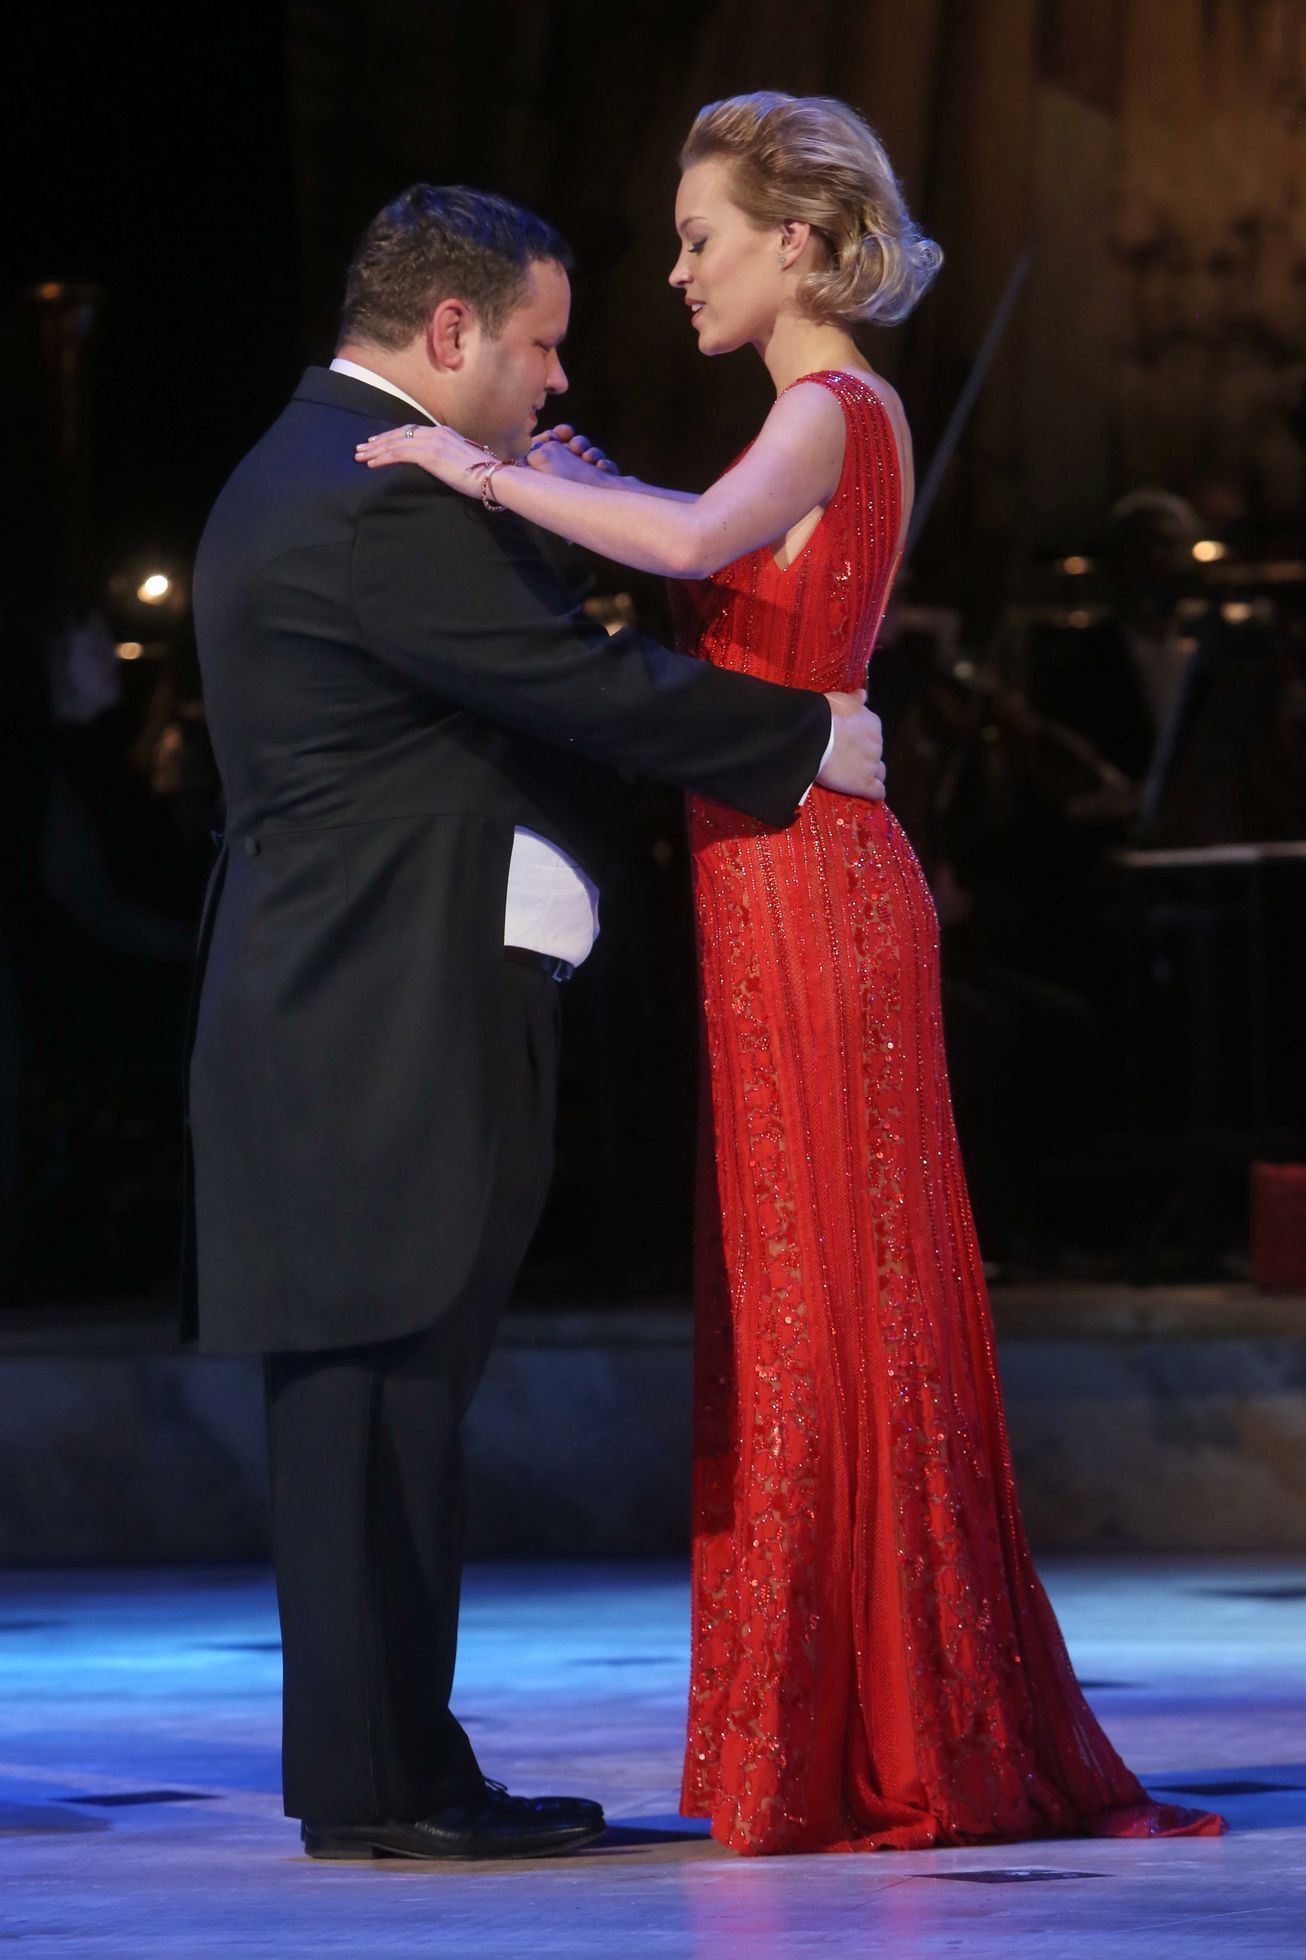 Ples v Opeře 2014 - Paul Potts, Zuzana Vinzens